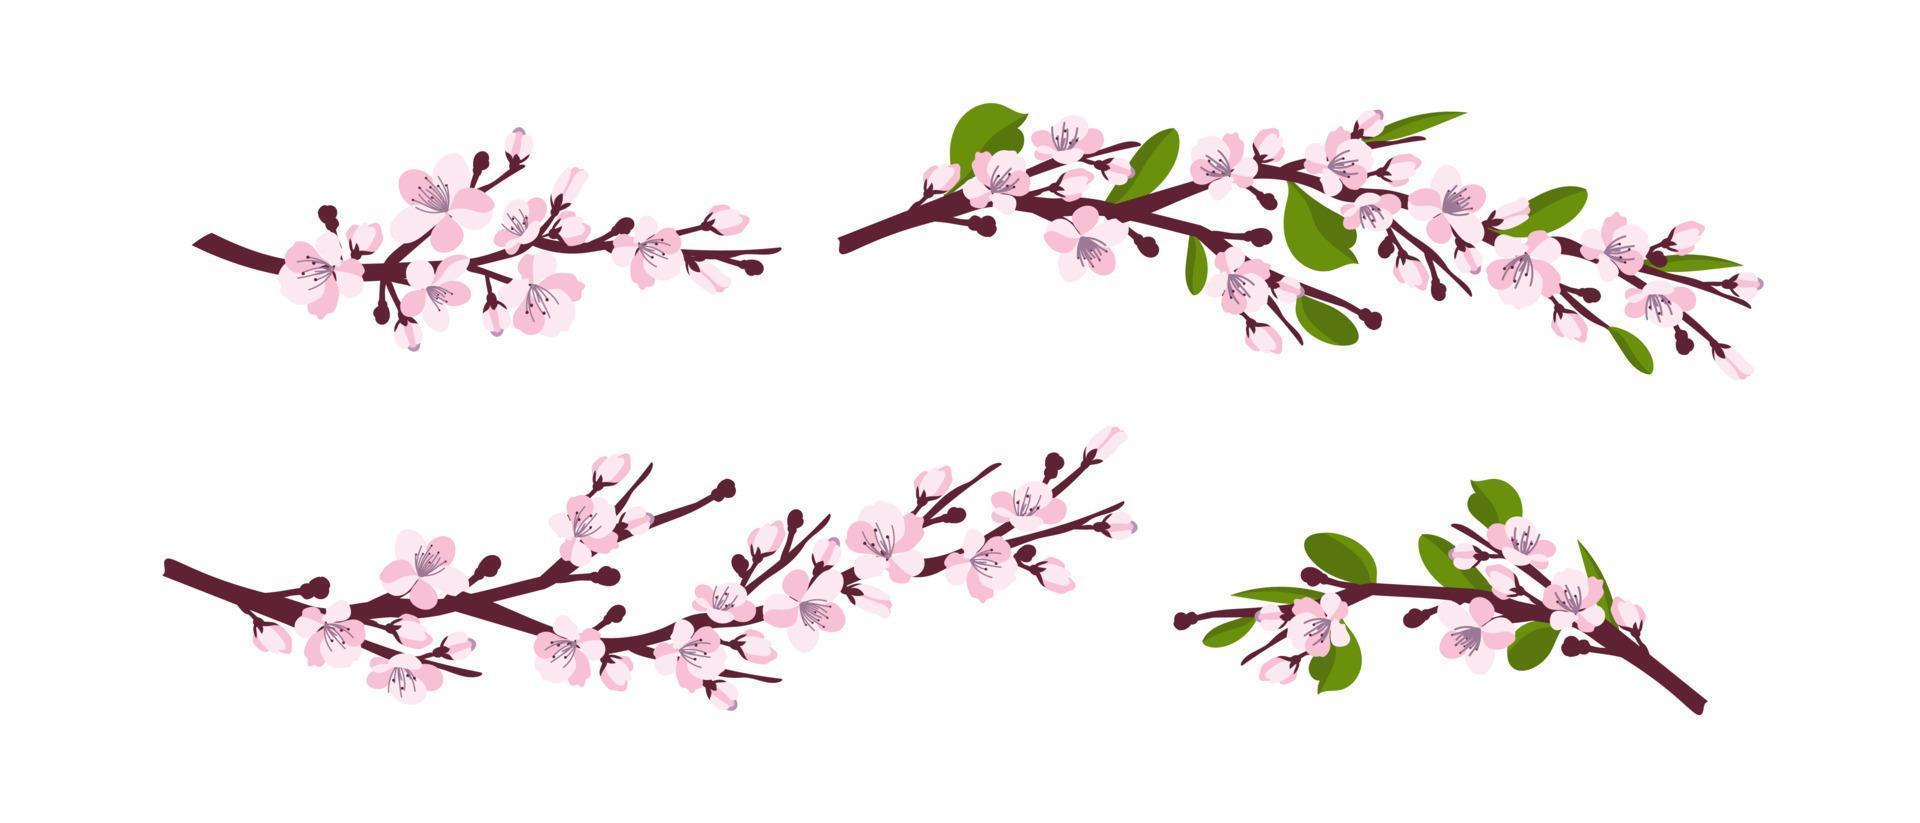 Flor de cerejeira. um conjunto de galhos com flores de cerejeira isoladas em um fundo branco. sakura japonesa. ilustração vetorial vetor